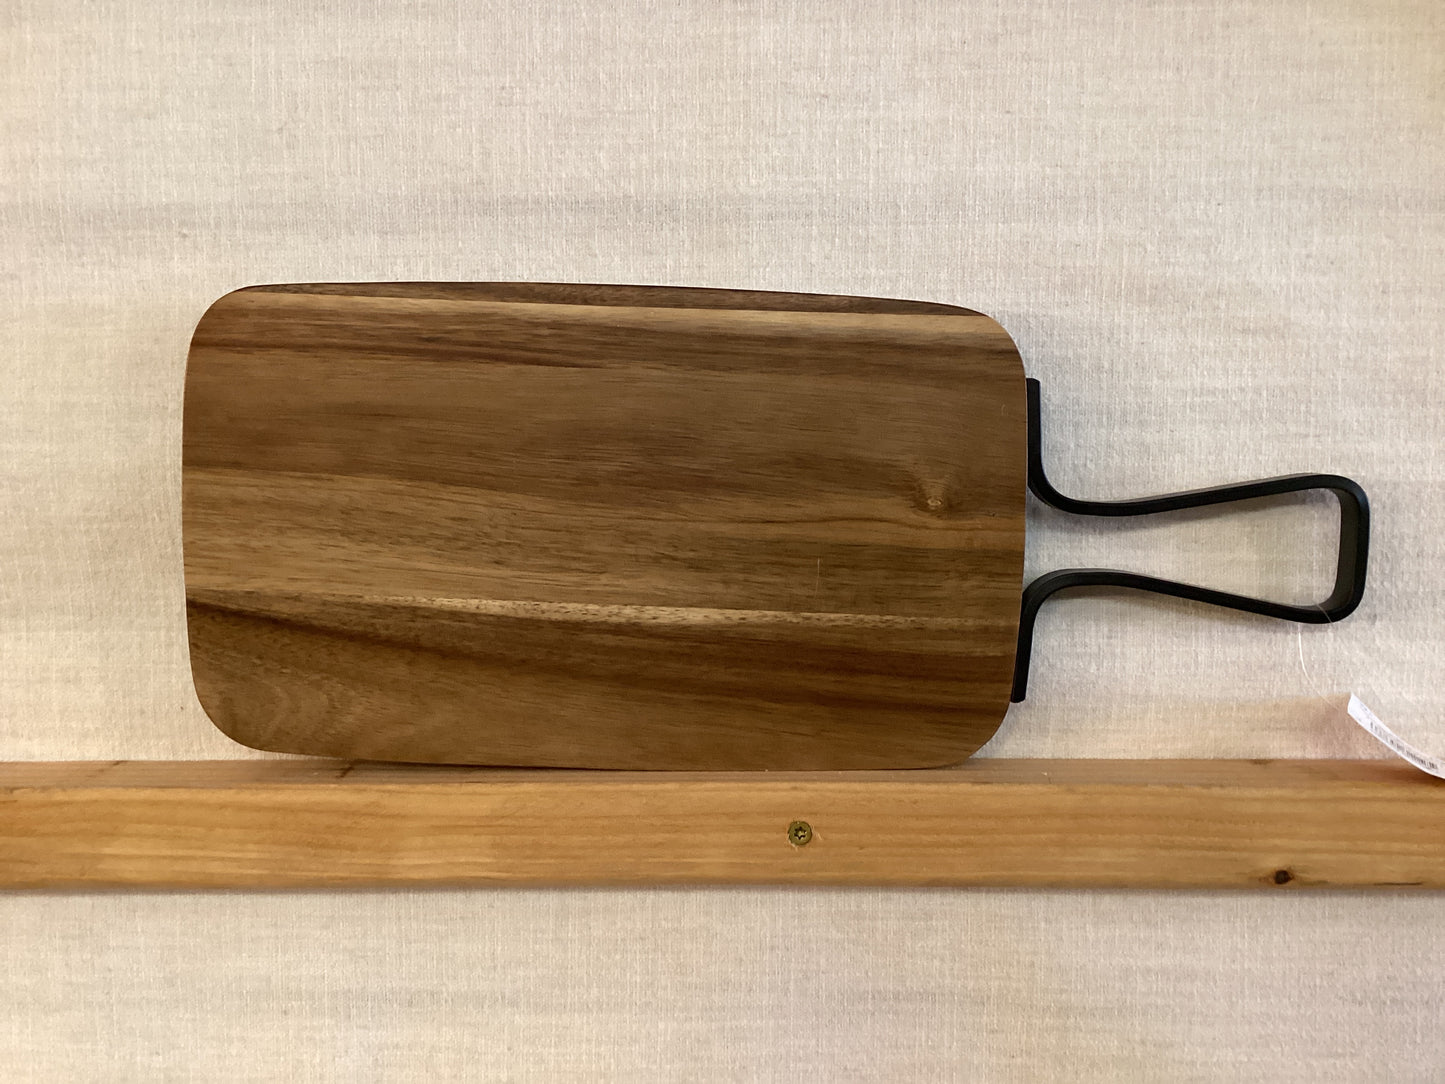 Rectangular paddle board metal handle